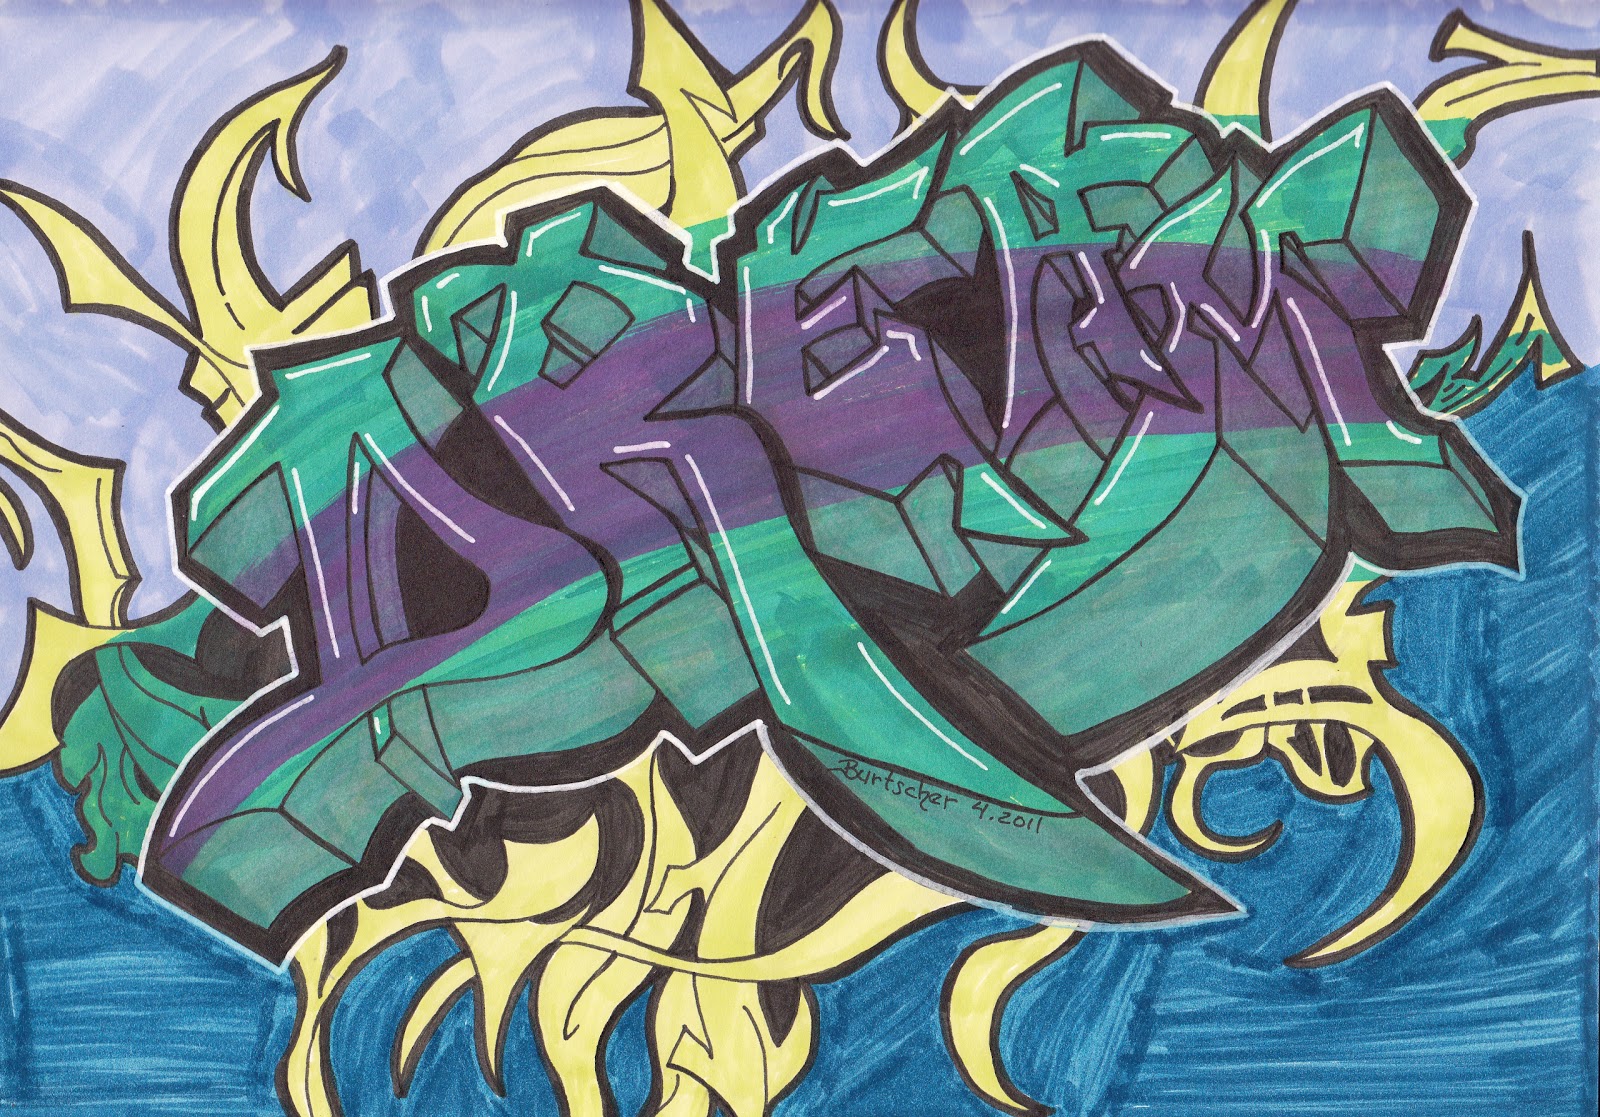 graffiti cool drawings